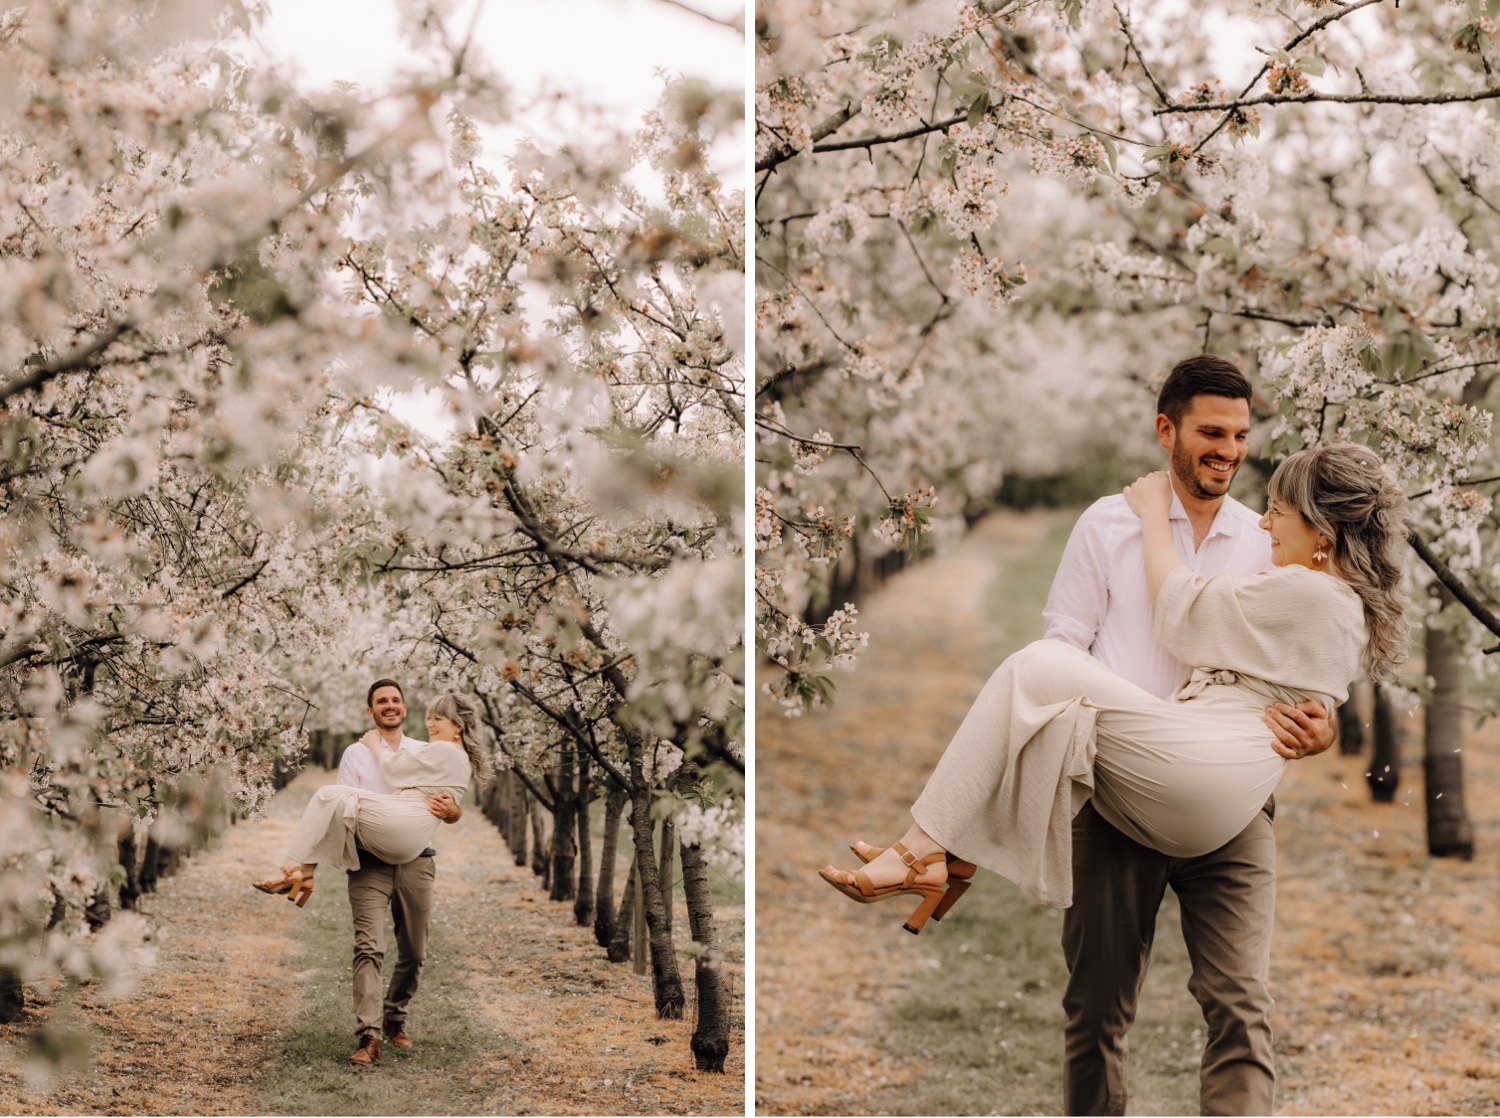 Huwelijksfotograaf Limburg - man draagt zijn verloofde tussen de bloesems